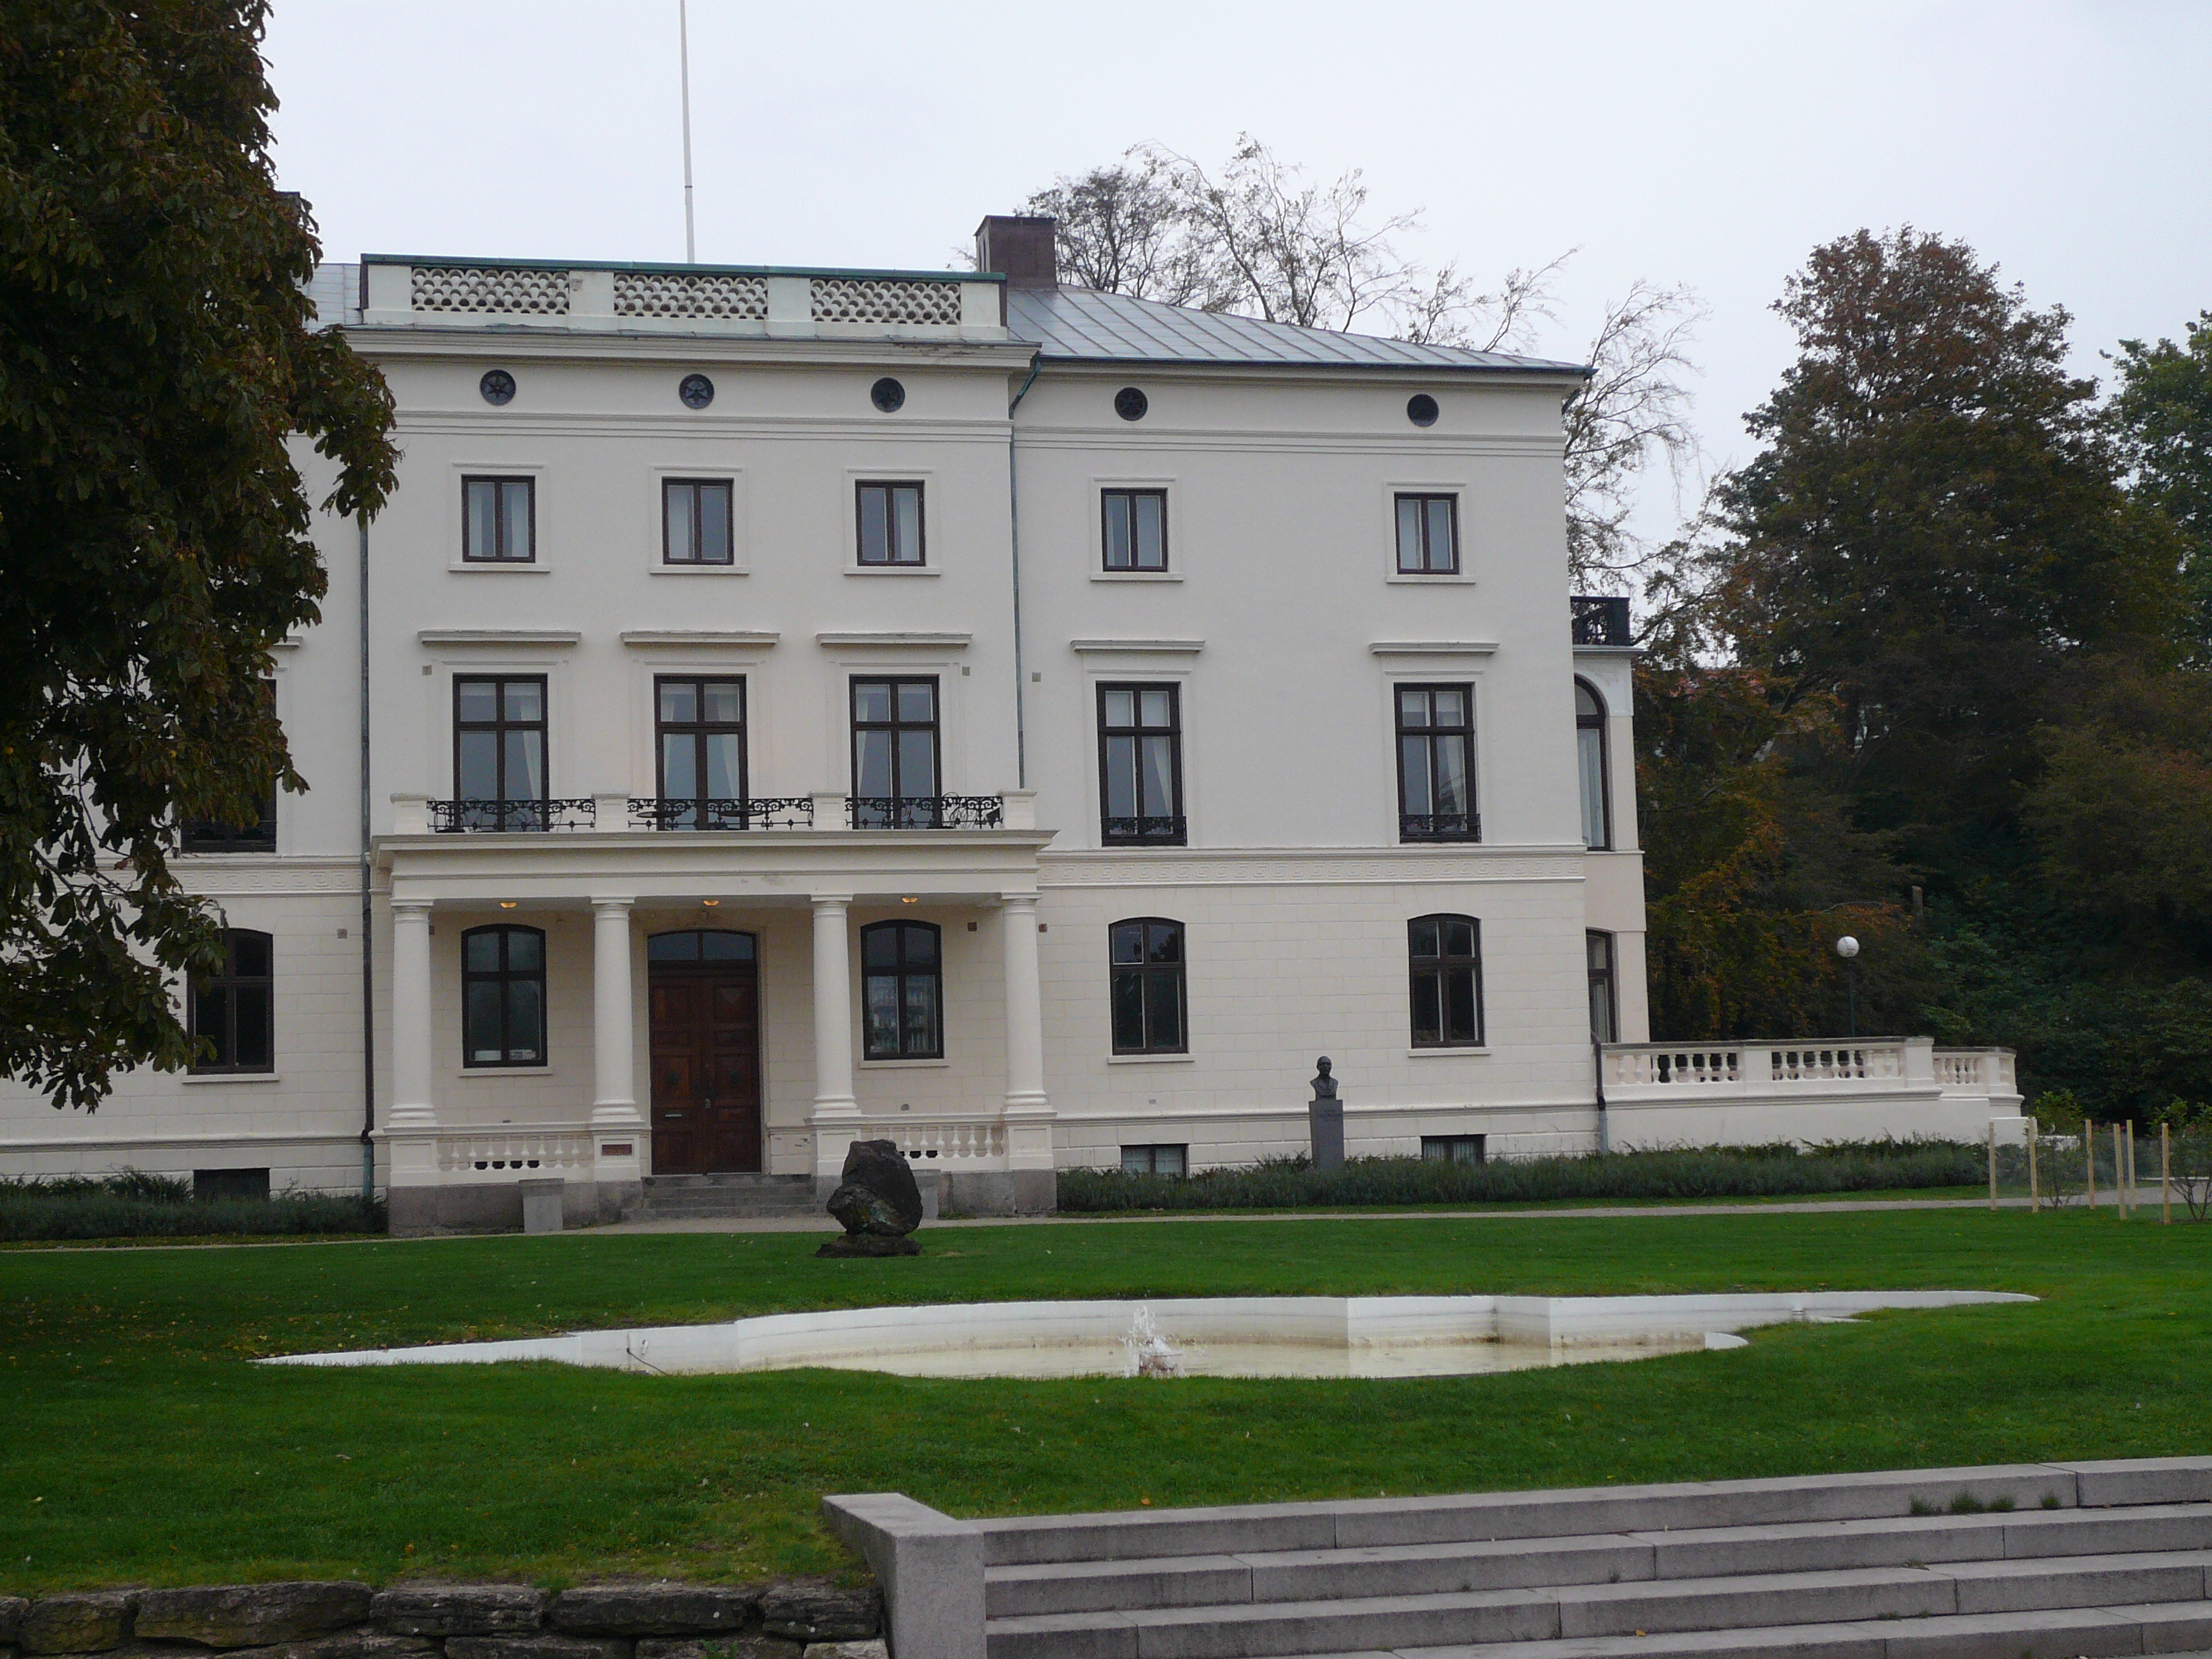 Konsul Perssons villa (Essenska villan, Helsingborg) från väster.